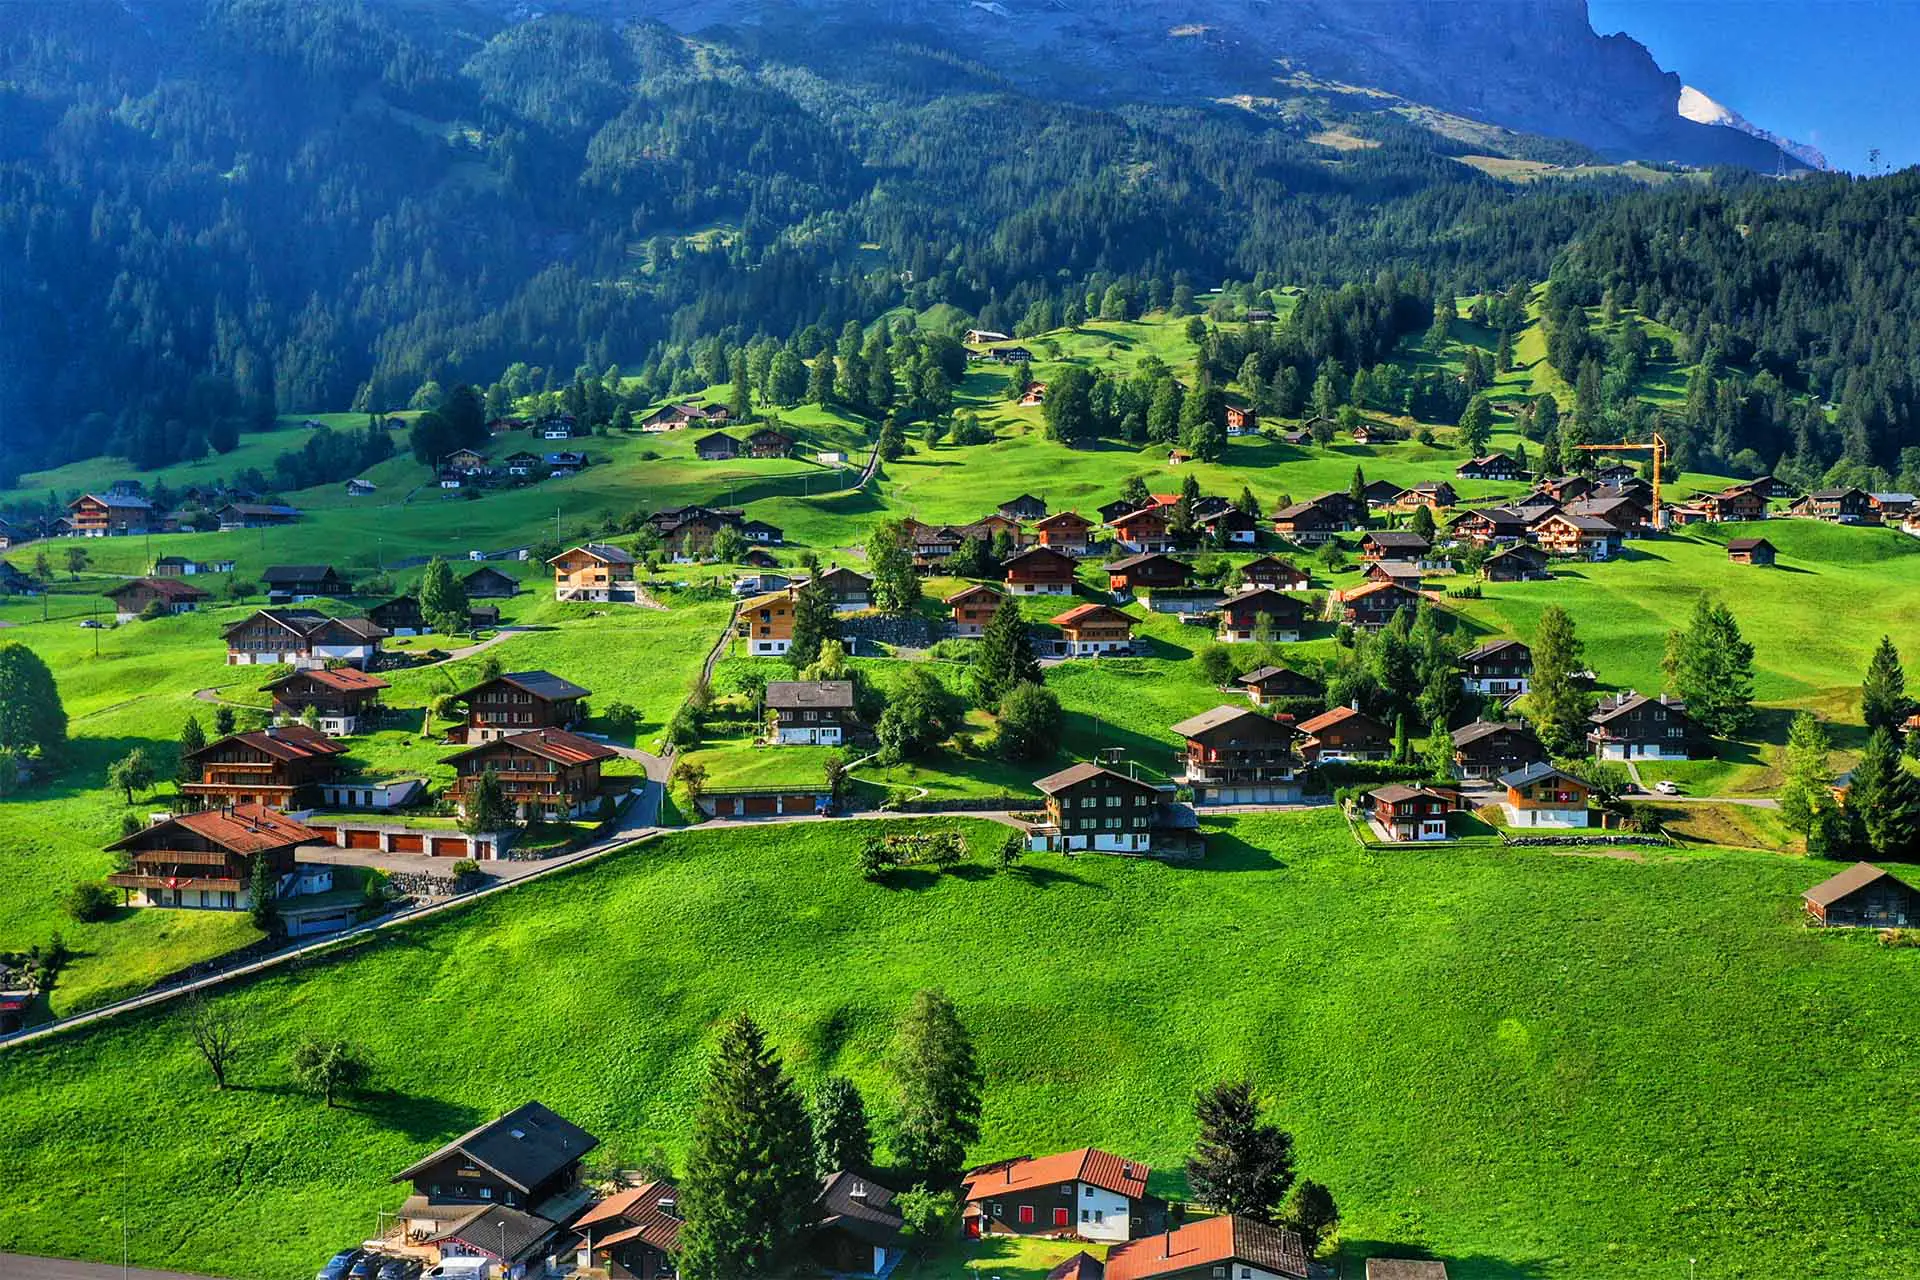 Grindelwald magnifique - un lieu à voir absolu sur la liste de chaque touriste.